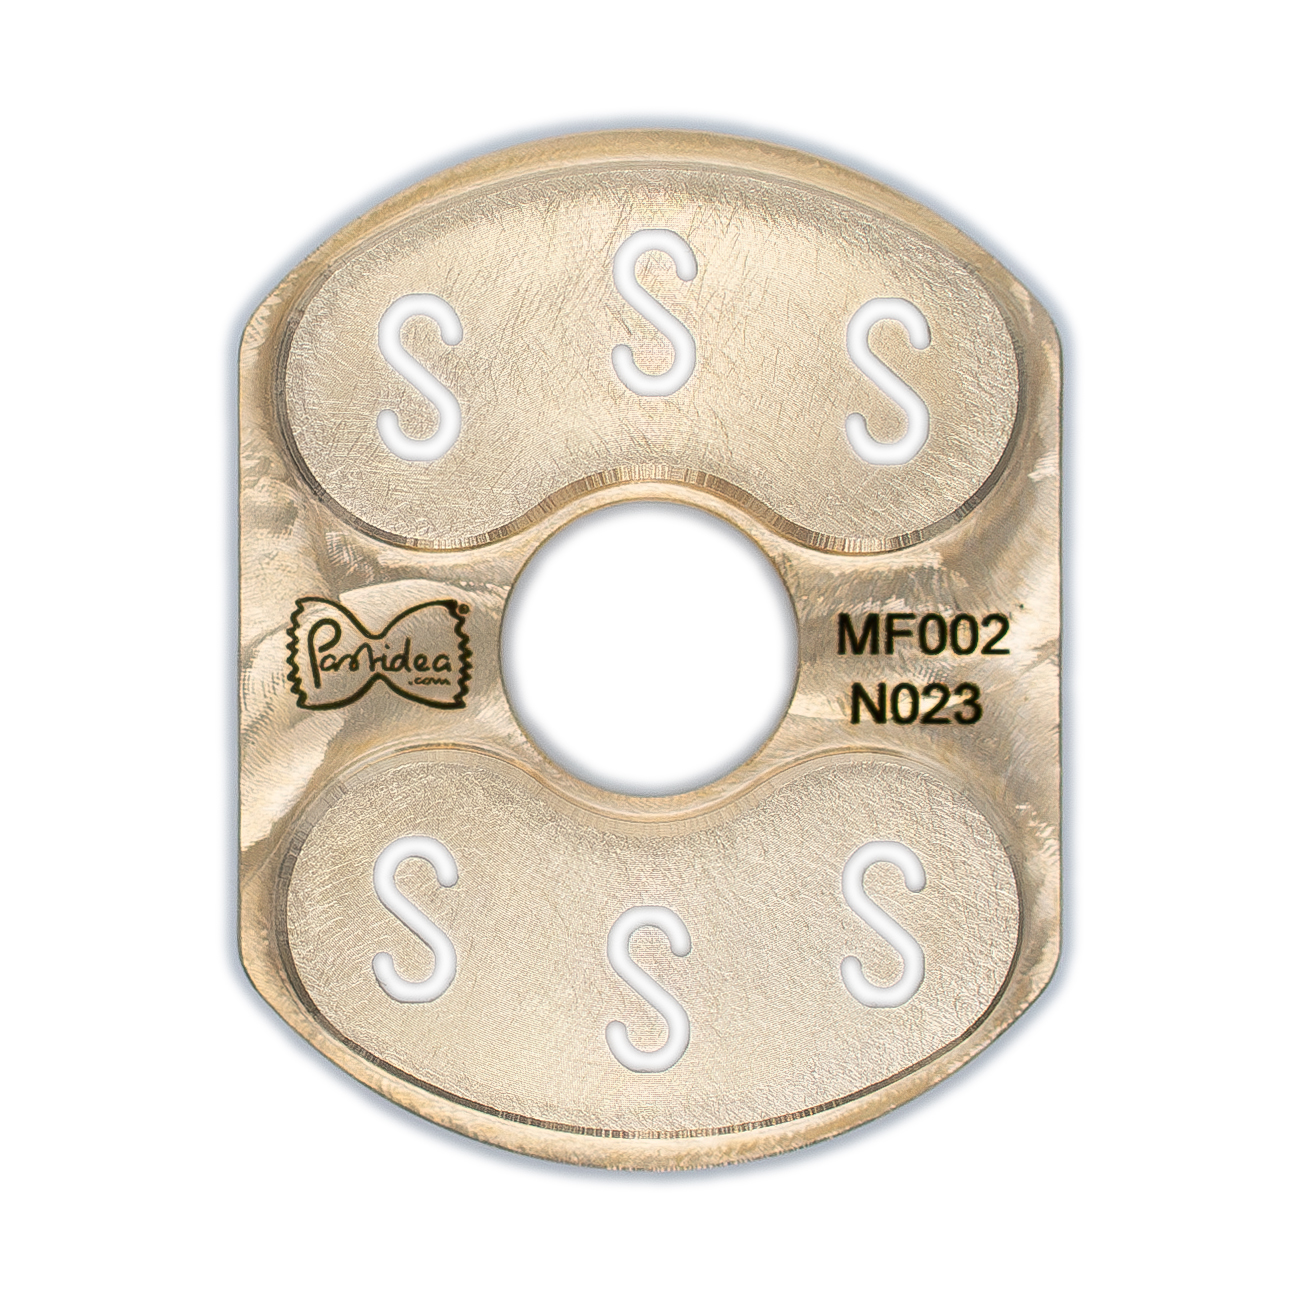 pasta einsatz (typ 2) in bronze spaghetti quadri chitarra 2,5x2,5mm für philips pasta maker avance / 7000 series (einsatzhalter erforderlich) (kopie)